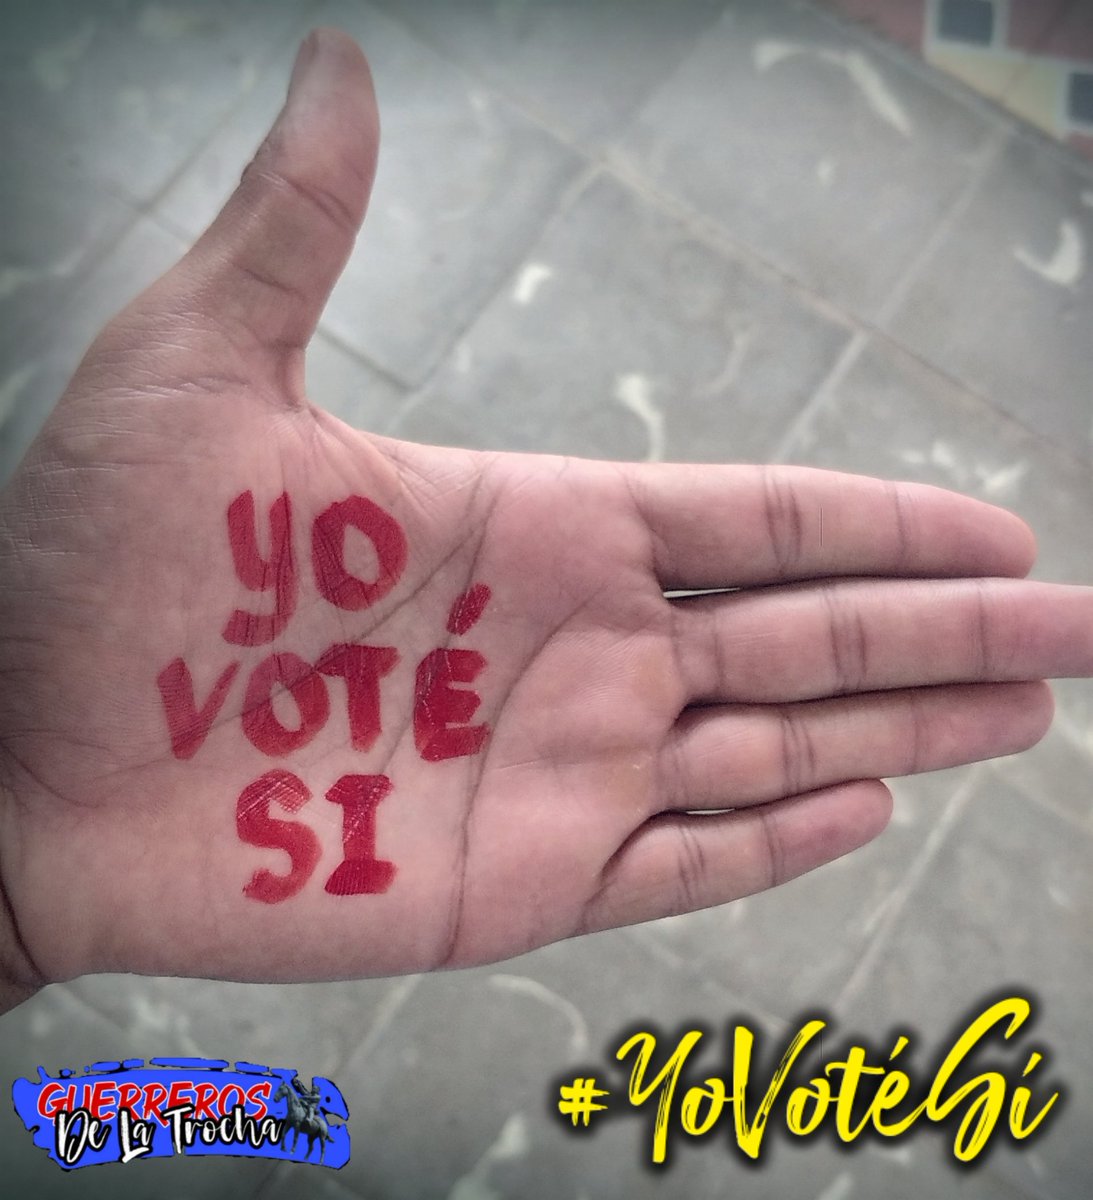 Que emoción 🥳, ya voté por el Sí, por nuestro código, el de todos, que no quepa dudas y que sufran los odiadores.
#YoVotéSí #CodigoSí